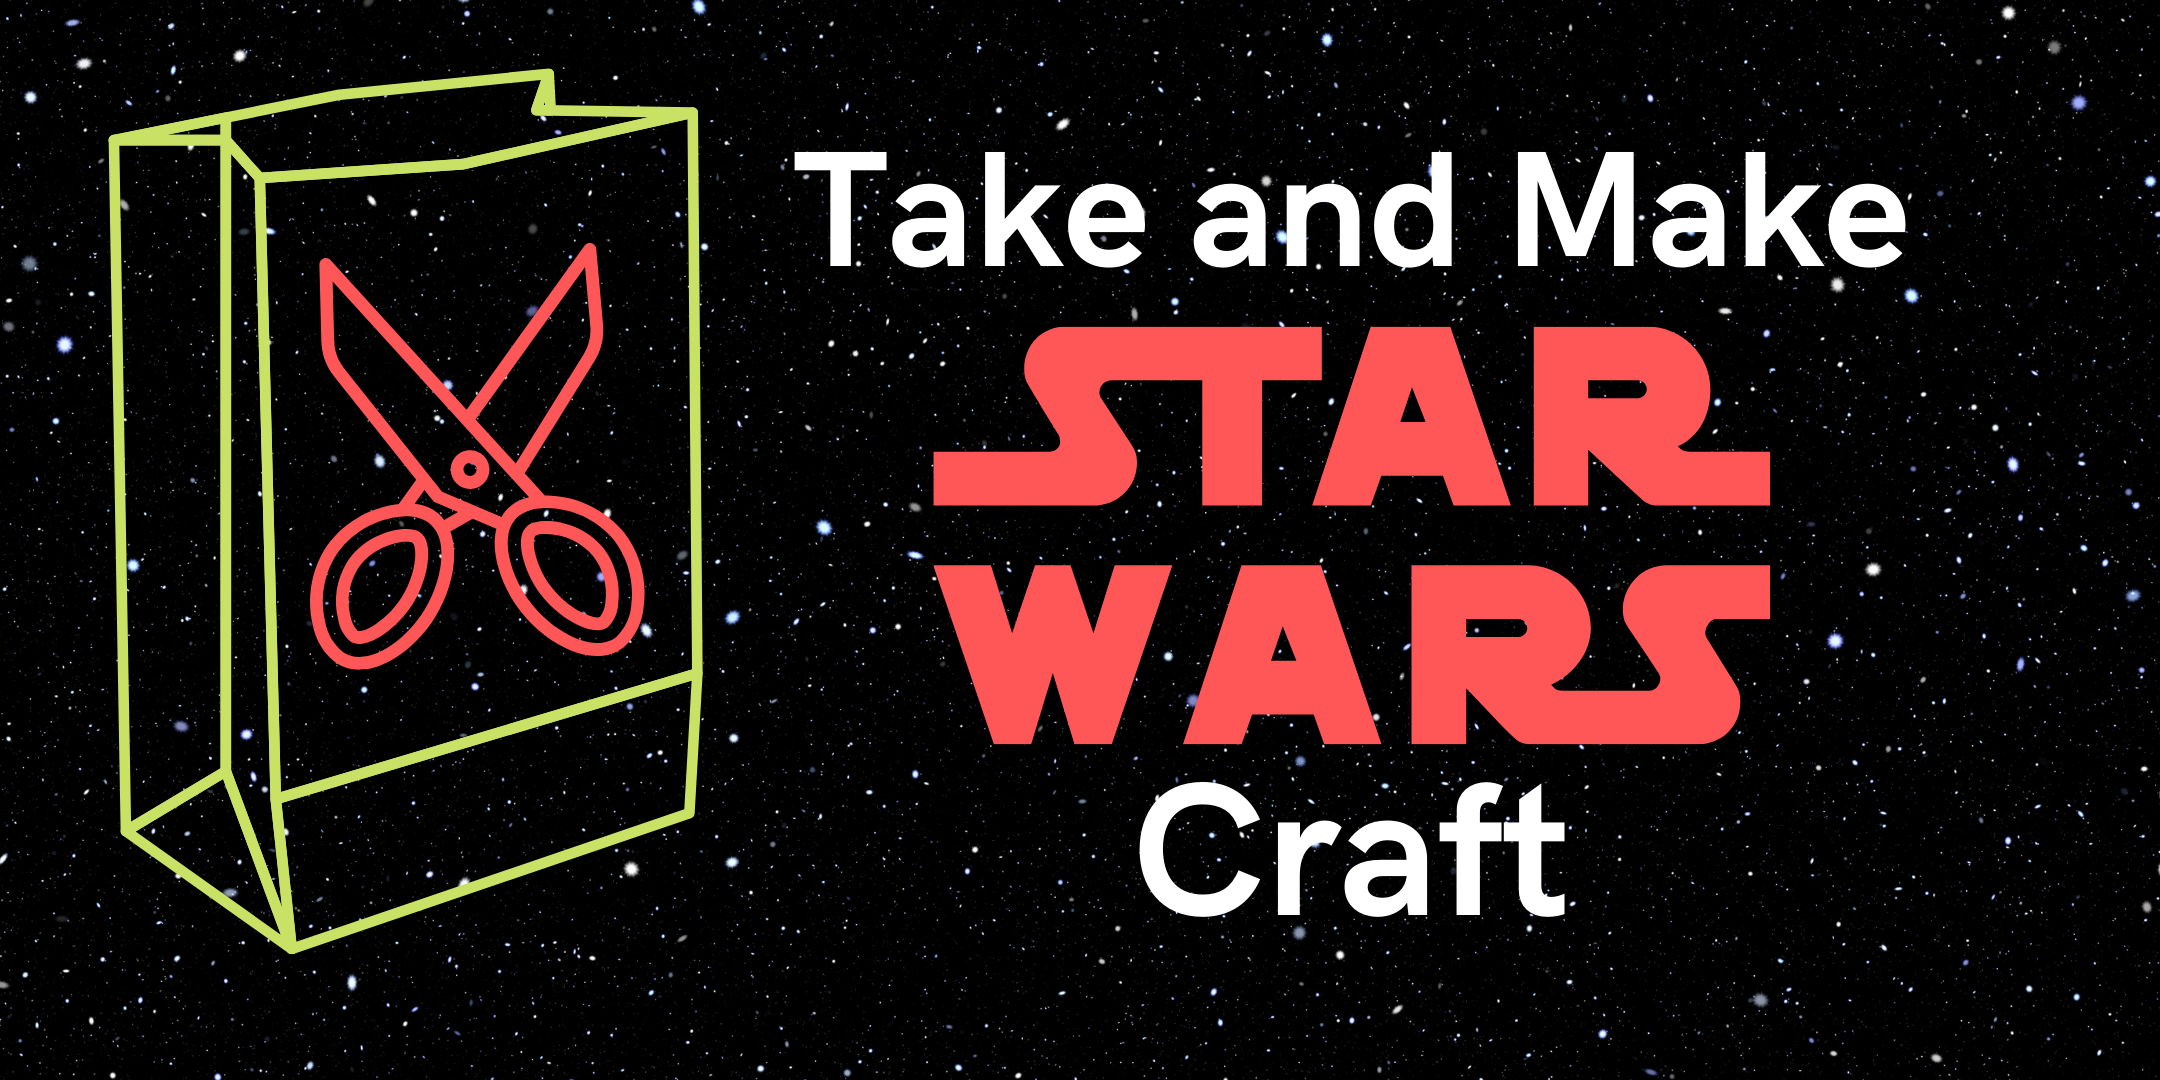 Take and Make Star Wars Craft